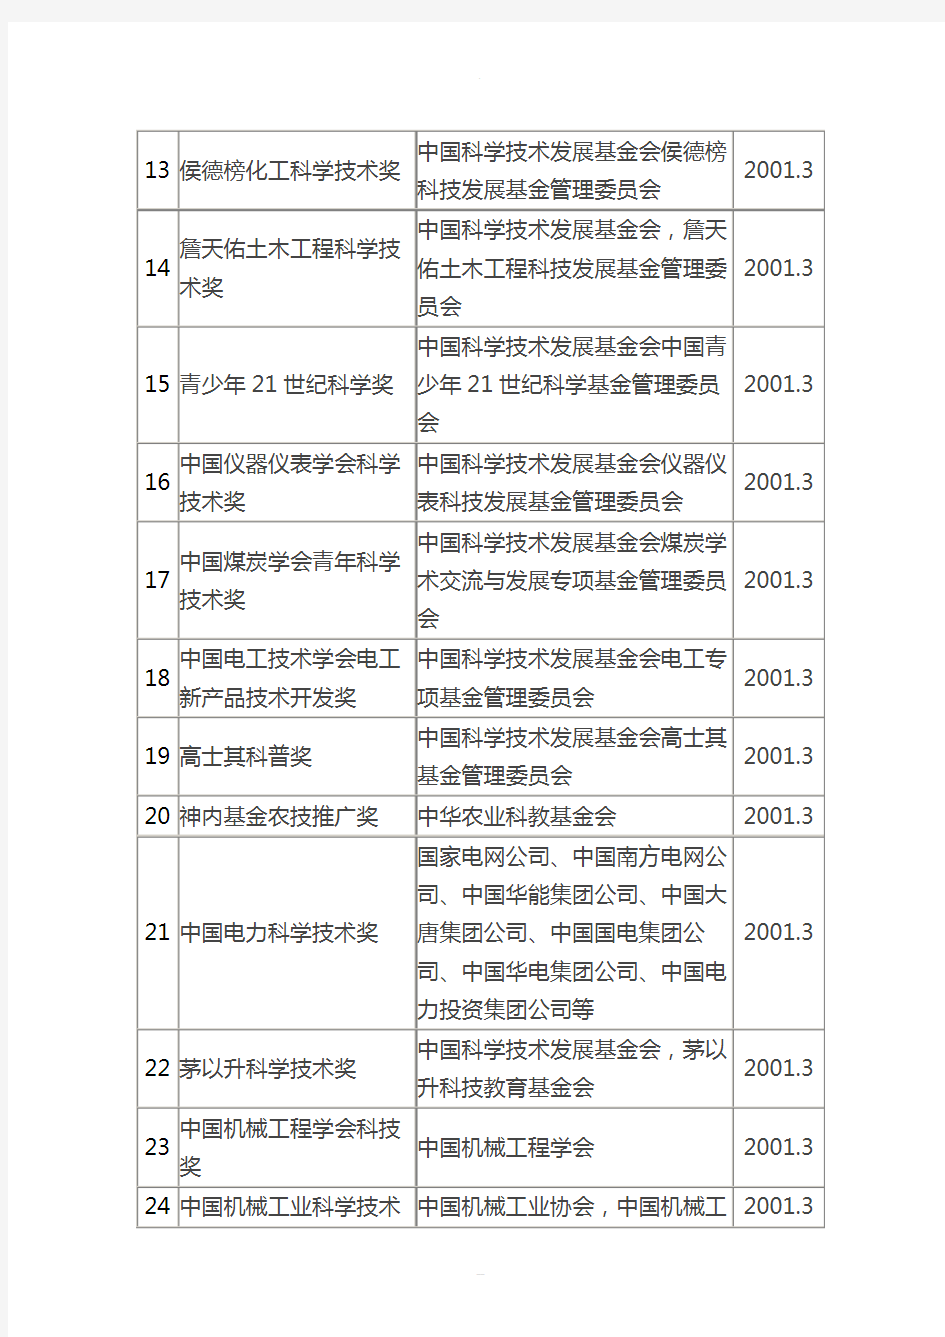 中华人民共和国科学技术部审批的社会力量设立科学技术奖项的名单